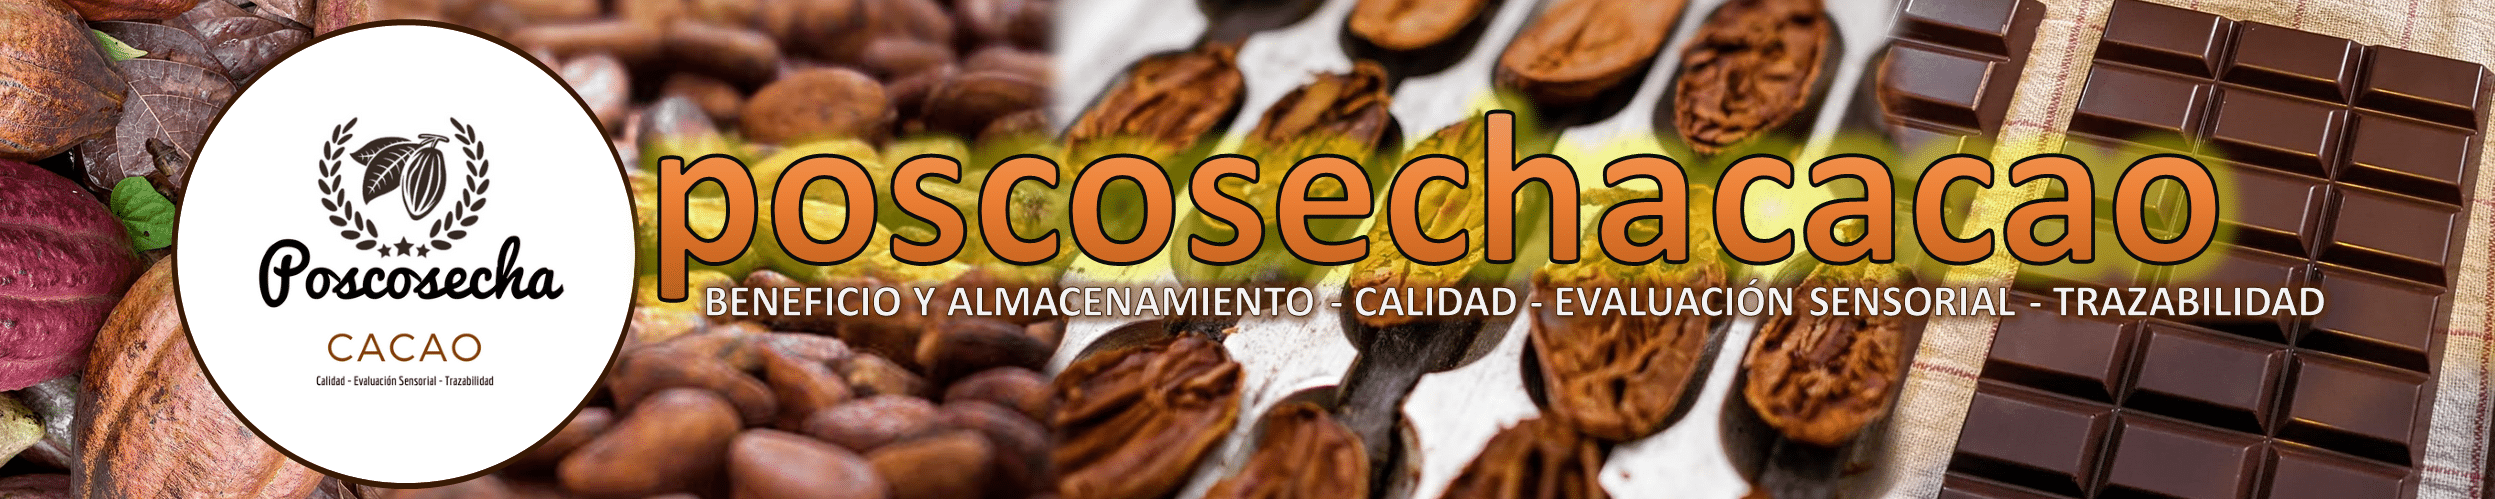 Poscosecha Cacao